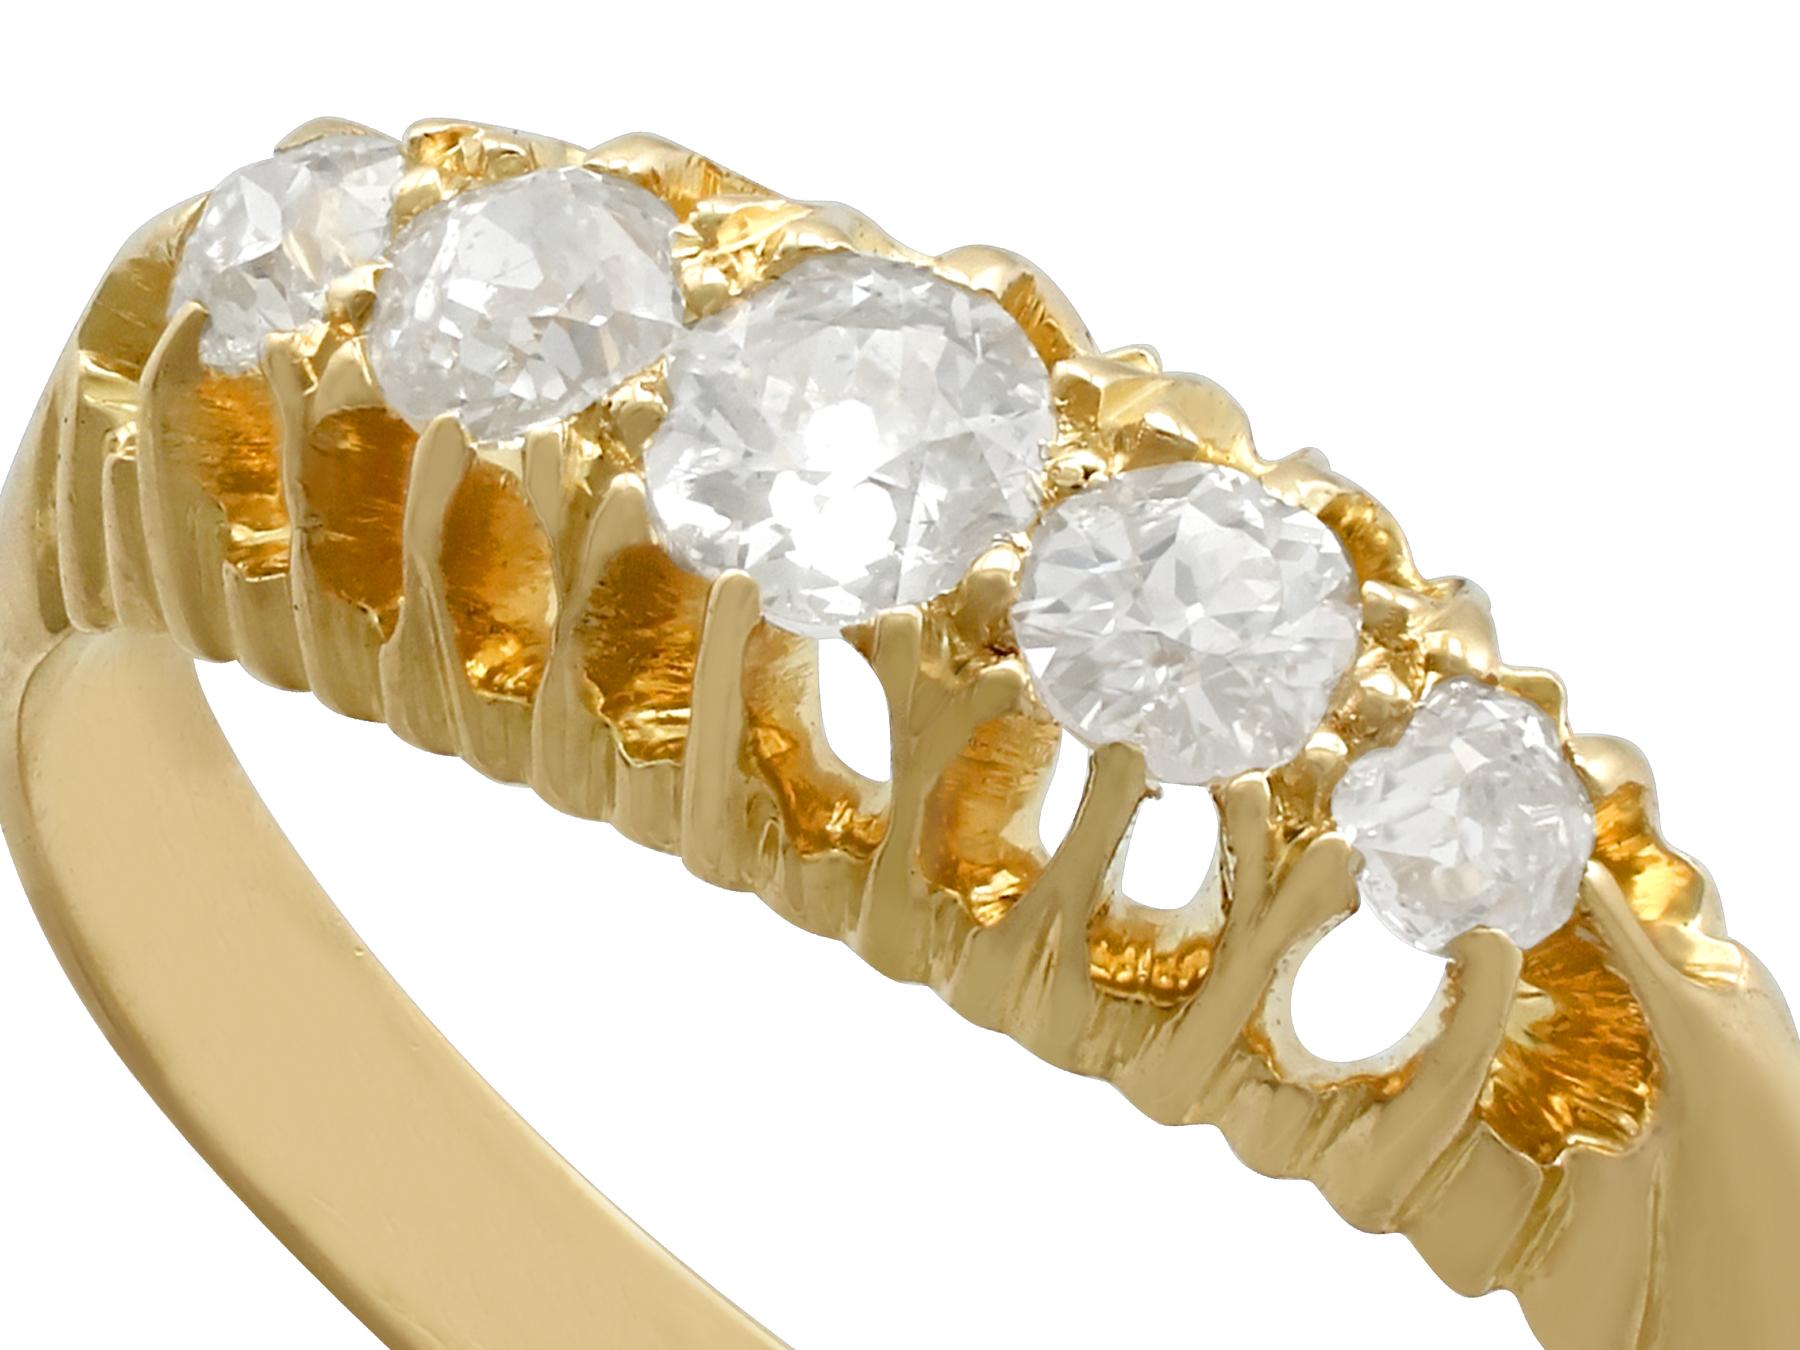 Eine feine und beeindruckende antike 0,56 Karat Diamant und 18 Karat Gelbgold fünf Stein-Cocktail-Ring; Teil unserer vielfältigen antiken Schmuck und Estate Jewelry Collections.

Dieser feine und beeindruckende antike edwardianische Diamantring ist